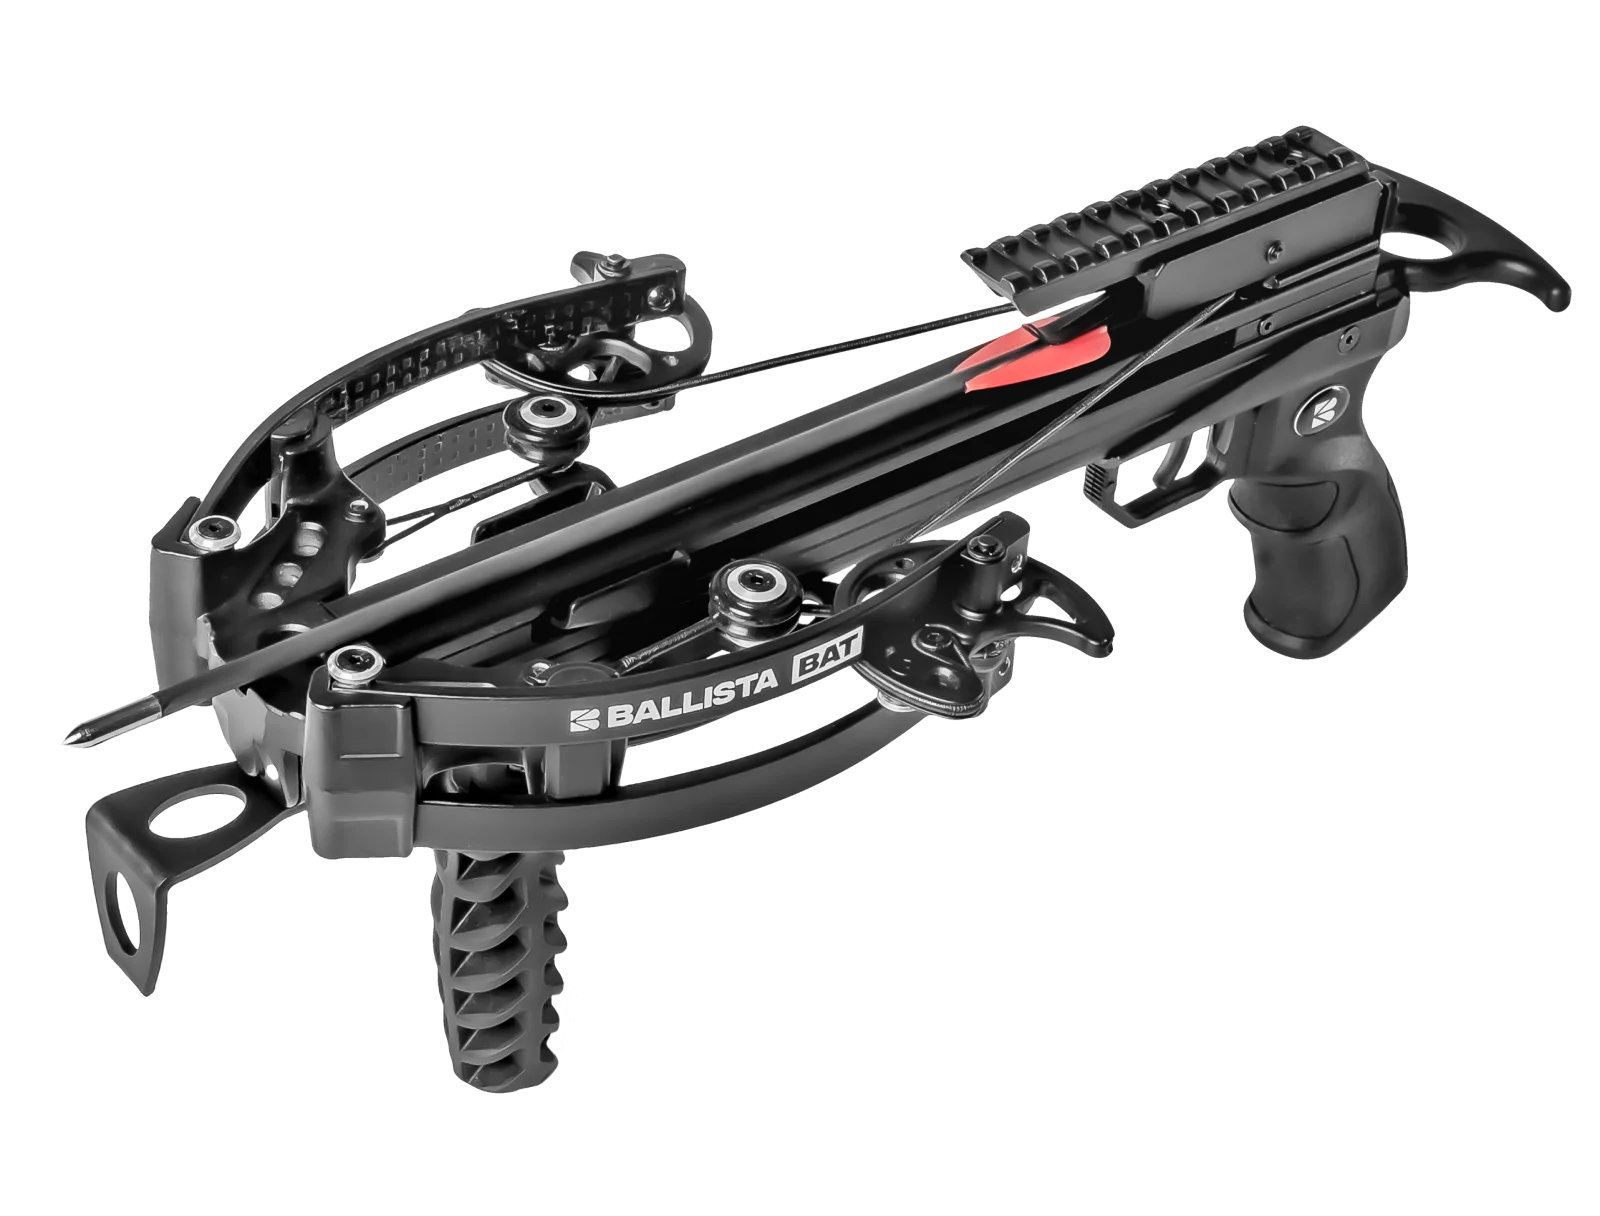 BALLISTA BAT Pistol Crossbow - Fast 330fps, Powerful 130lbs, Mini 2.46lbs -  BALLISTA